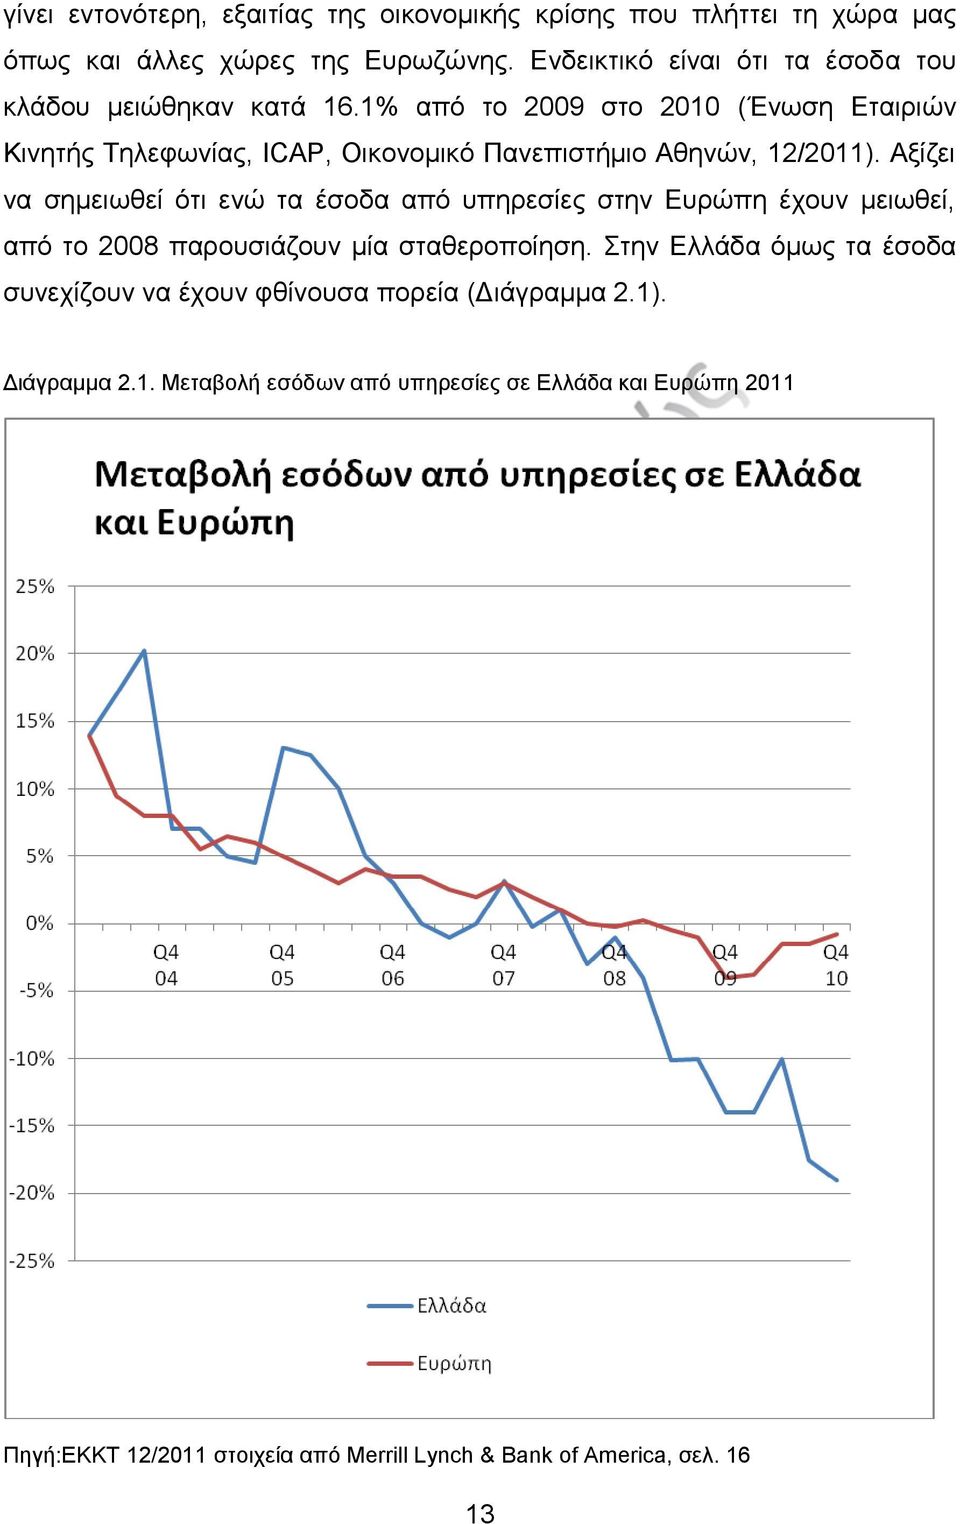 1% από το 2009 στο 2010 (Ένωση Εταιριών Κινητής Τηλεφωνίας, ICAP, Οικονομικό Πανεπιστήμιο Αθηνών, 12/2011).